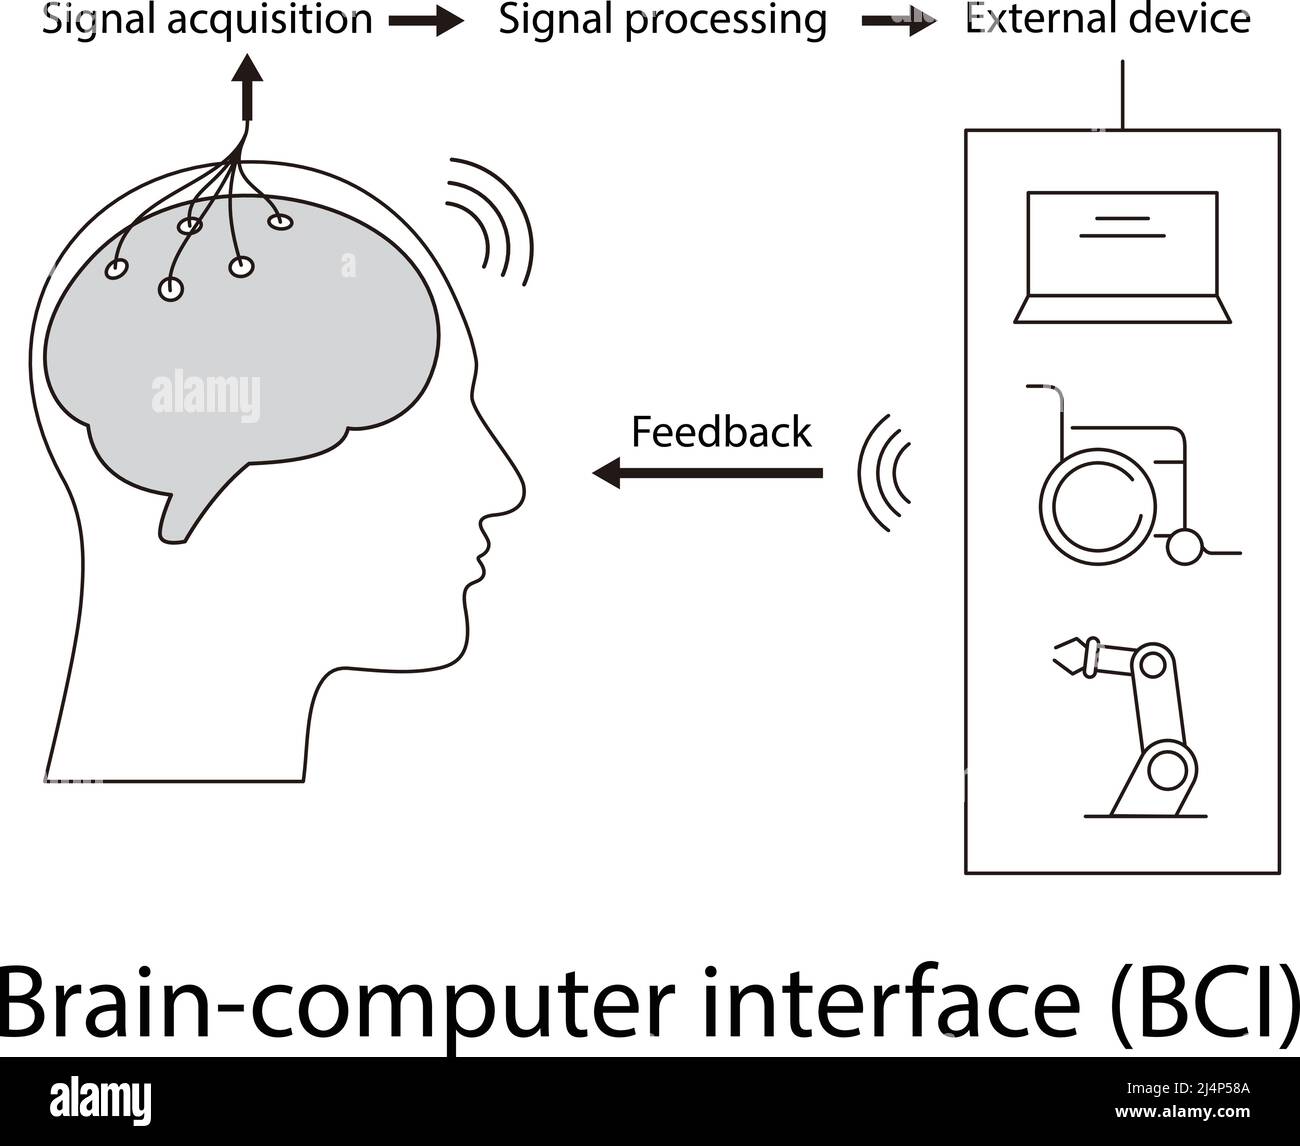 Menschliches Gehirn, Motherboards, Chip und künstliche Intelligenz Konzept und neuronale Tech und Gehirn-Computer-Schnittstellen. Stock Vektor